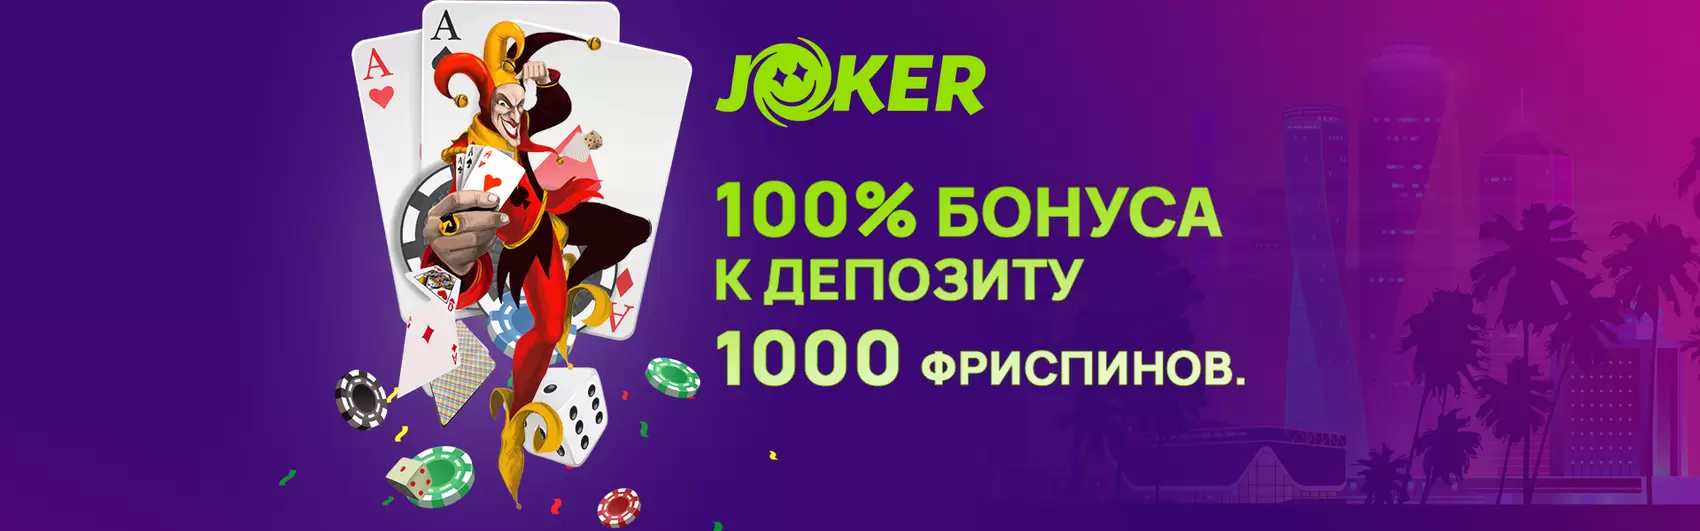 Joker-Casino